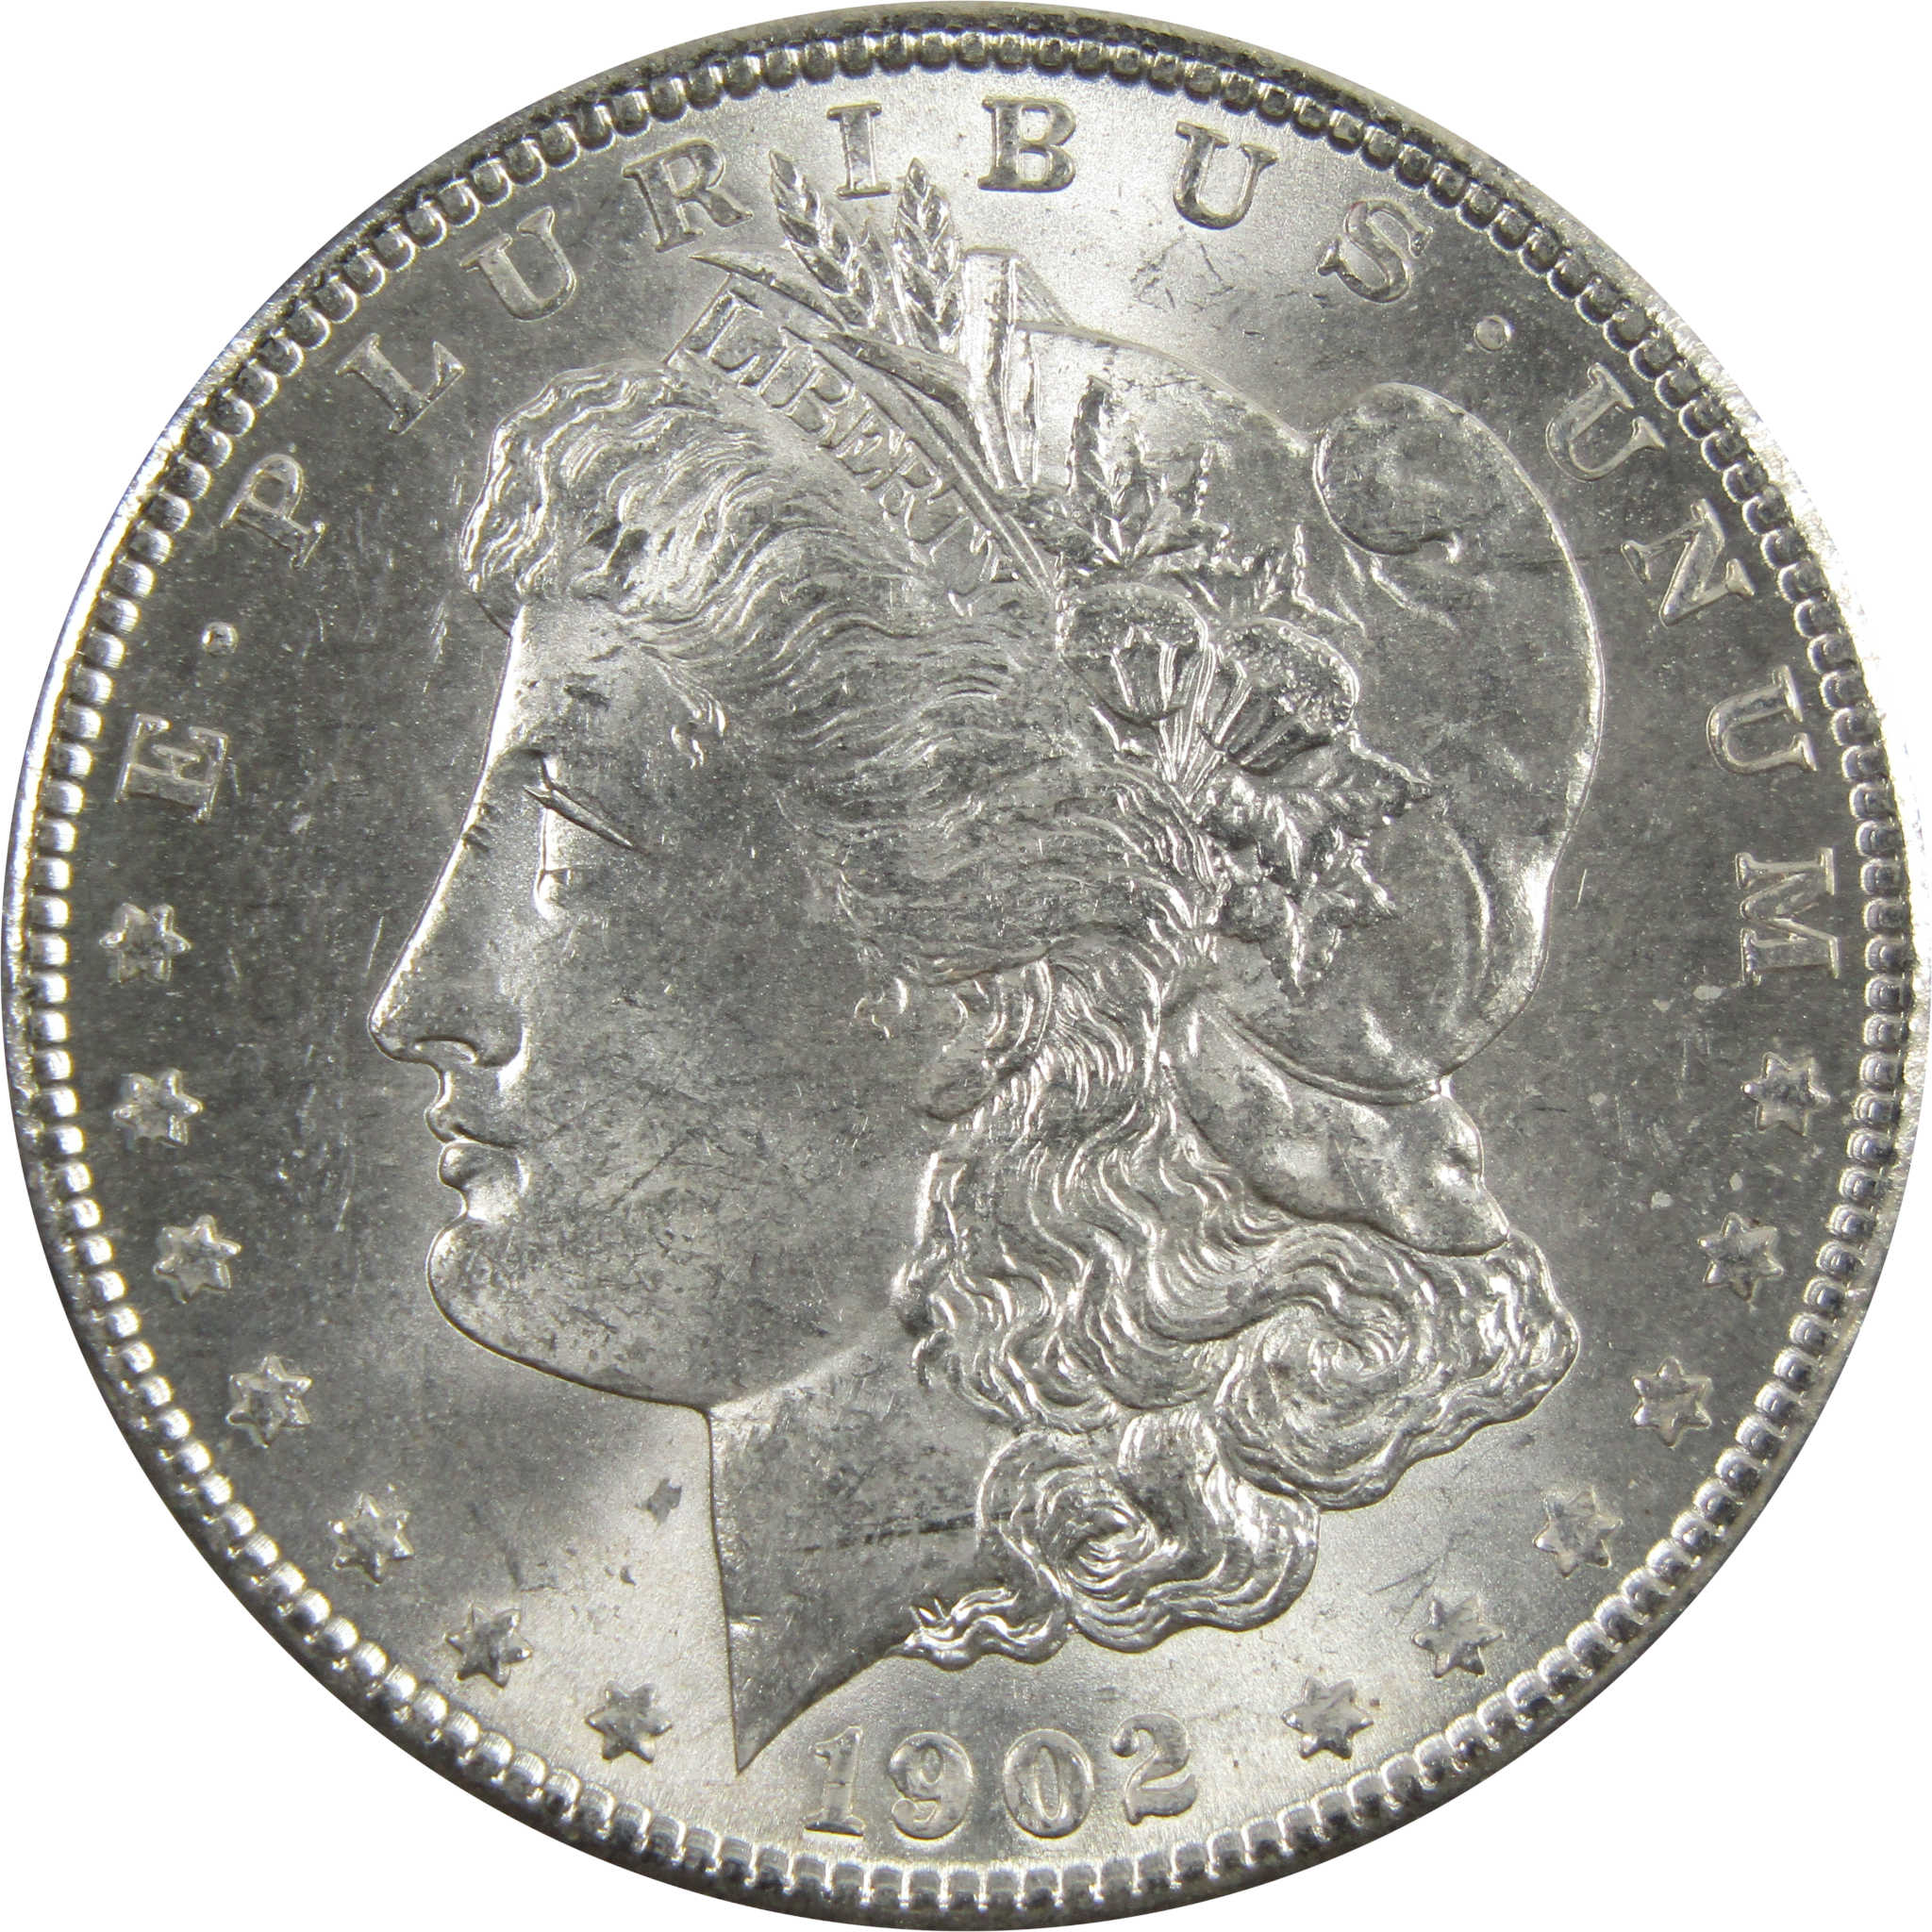 1902 O Morgan Dollar BU Uncirculated 90% Silver $1 Coin SKU:I5197 - Morgan coin - Morgan silver dollar - Morgan silver dollar for sale - Profile Coins &amp; Collectibles